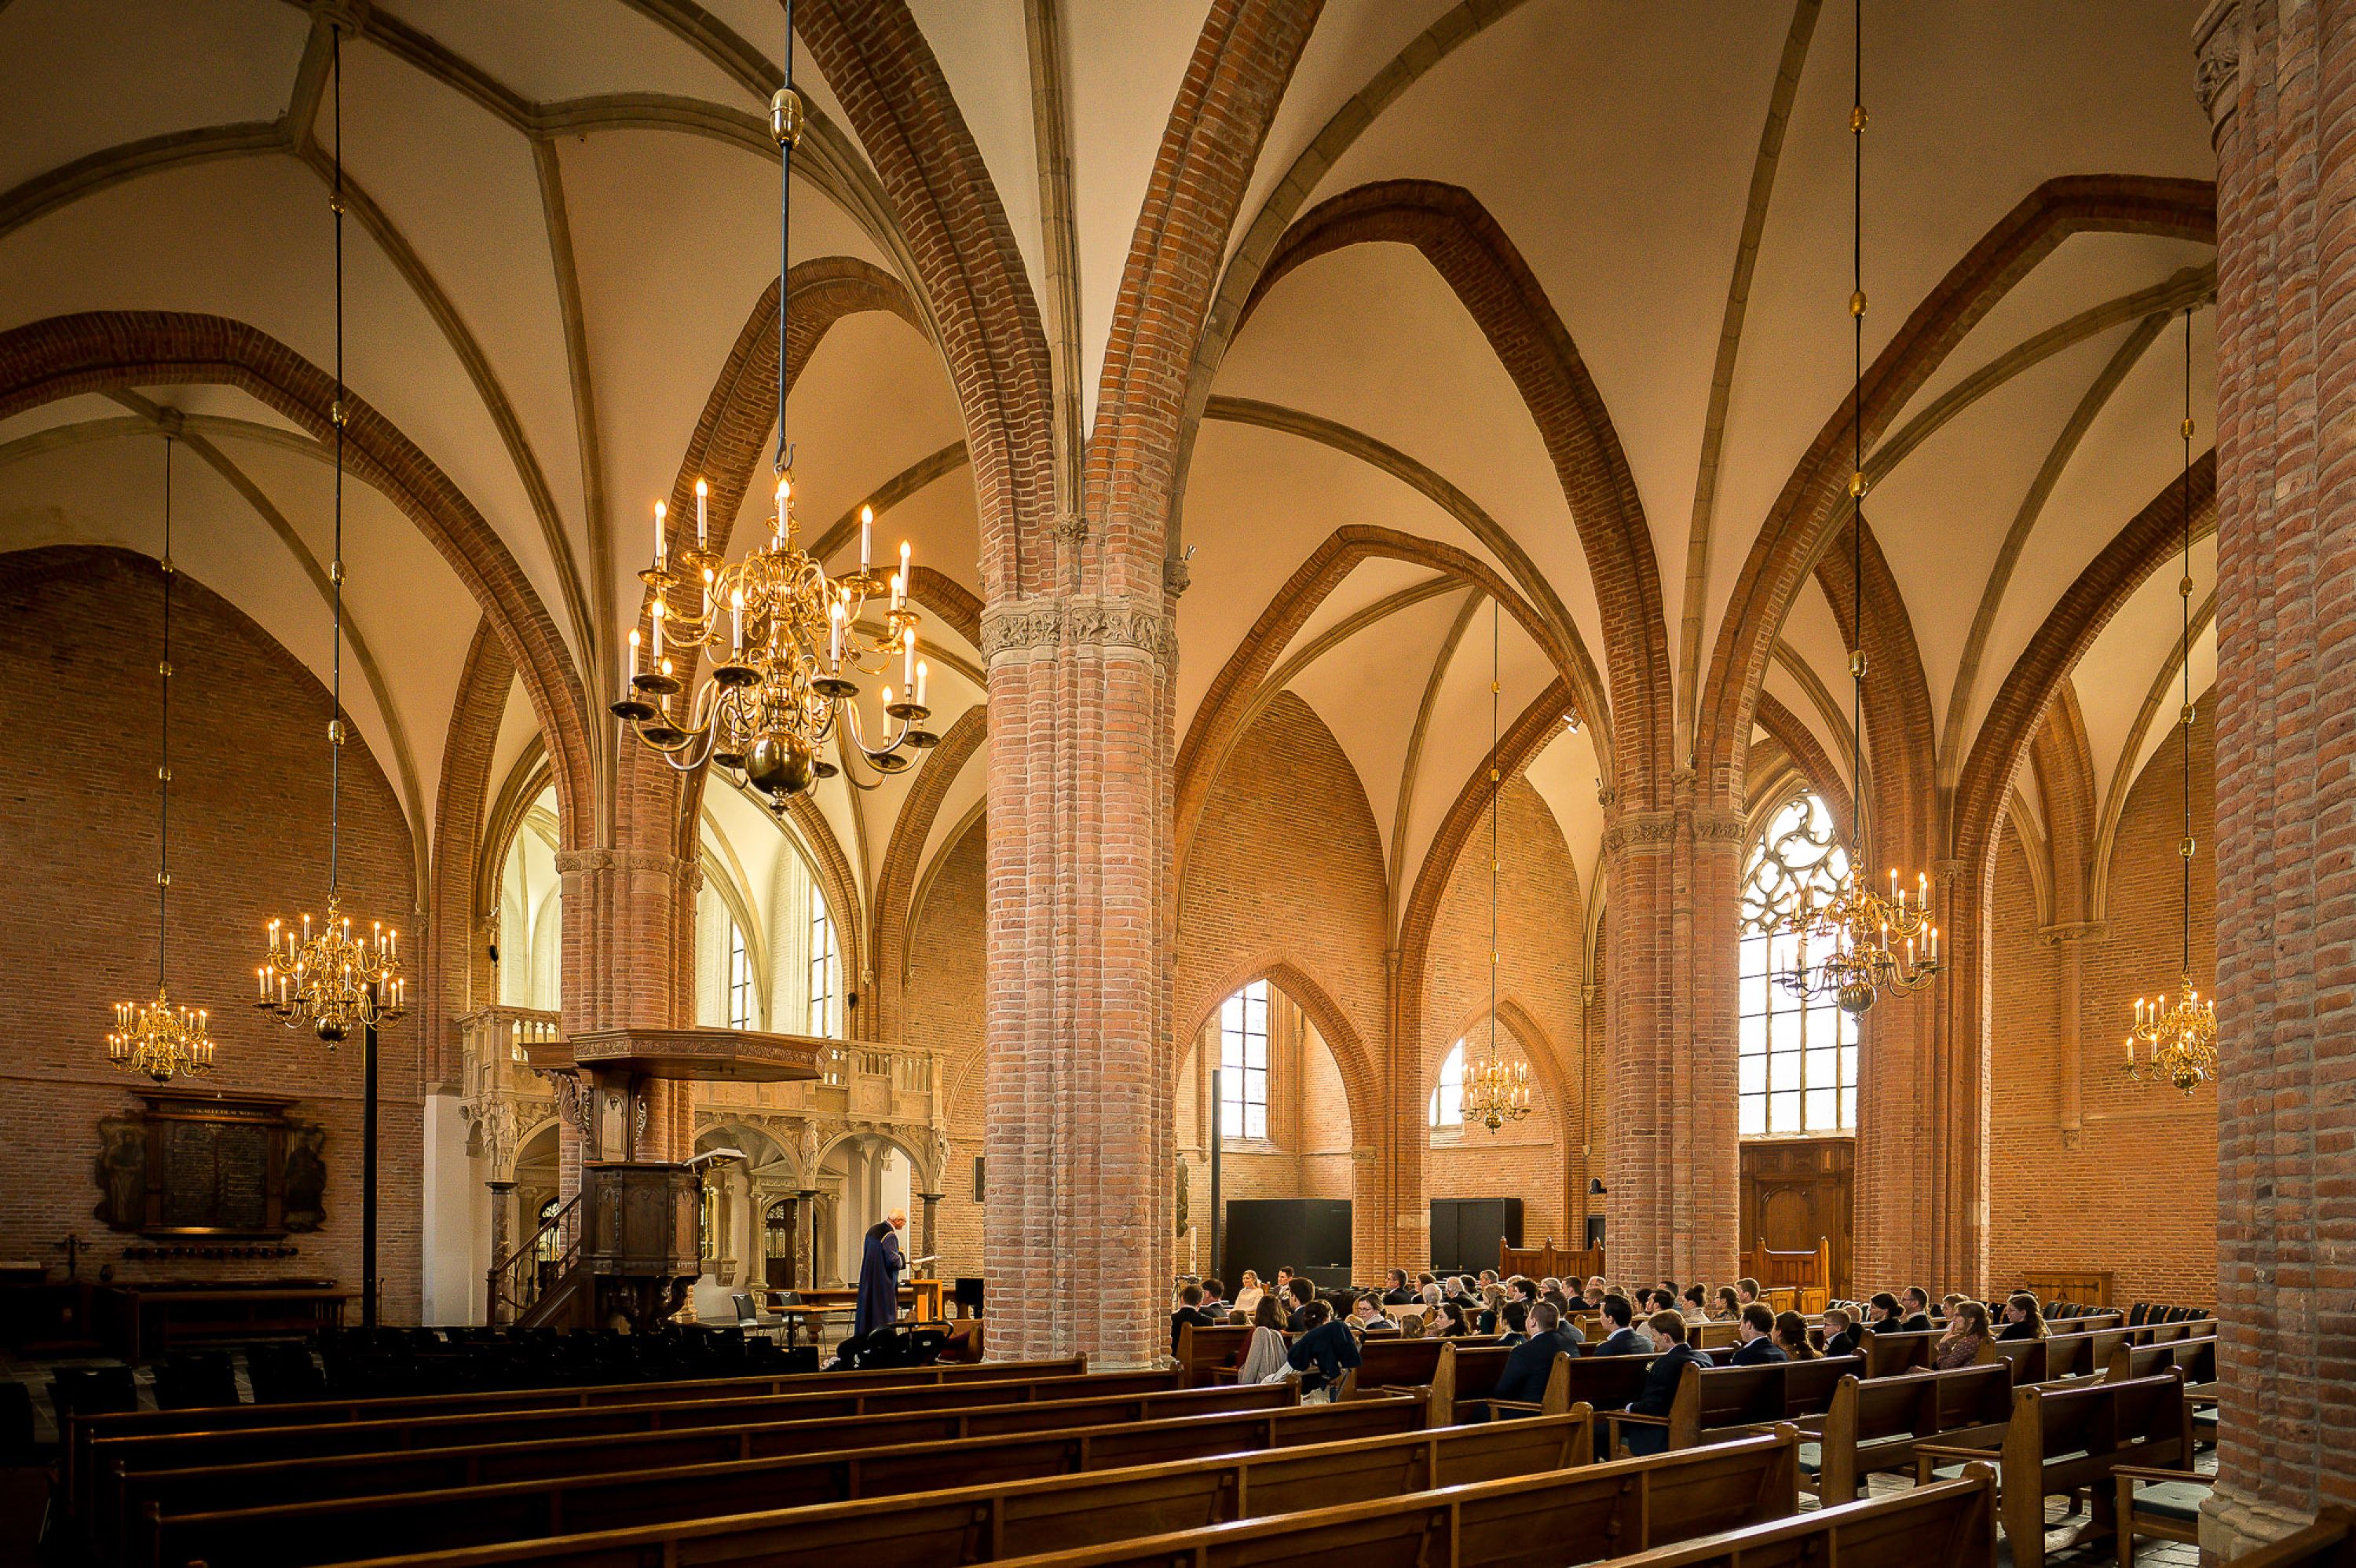 Jan-van-de-Maat-Fotografie-Bruidsfotografie-Cunerakerk-Rhenen